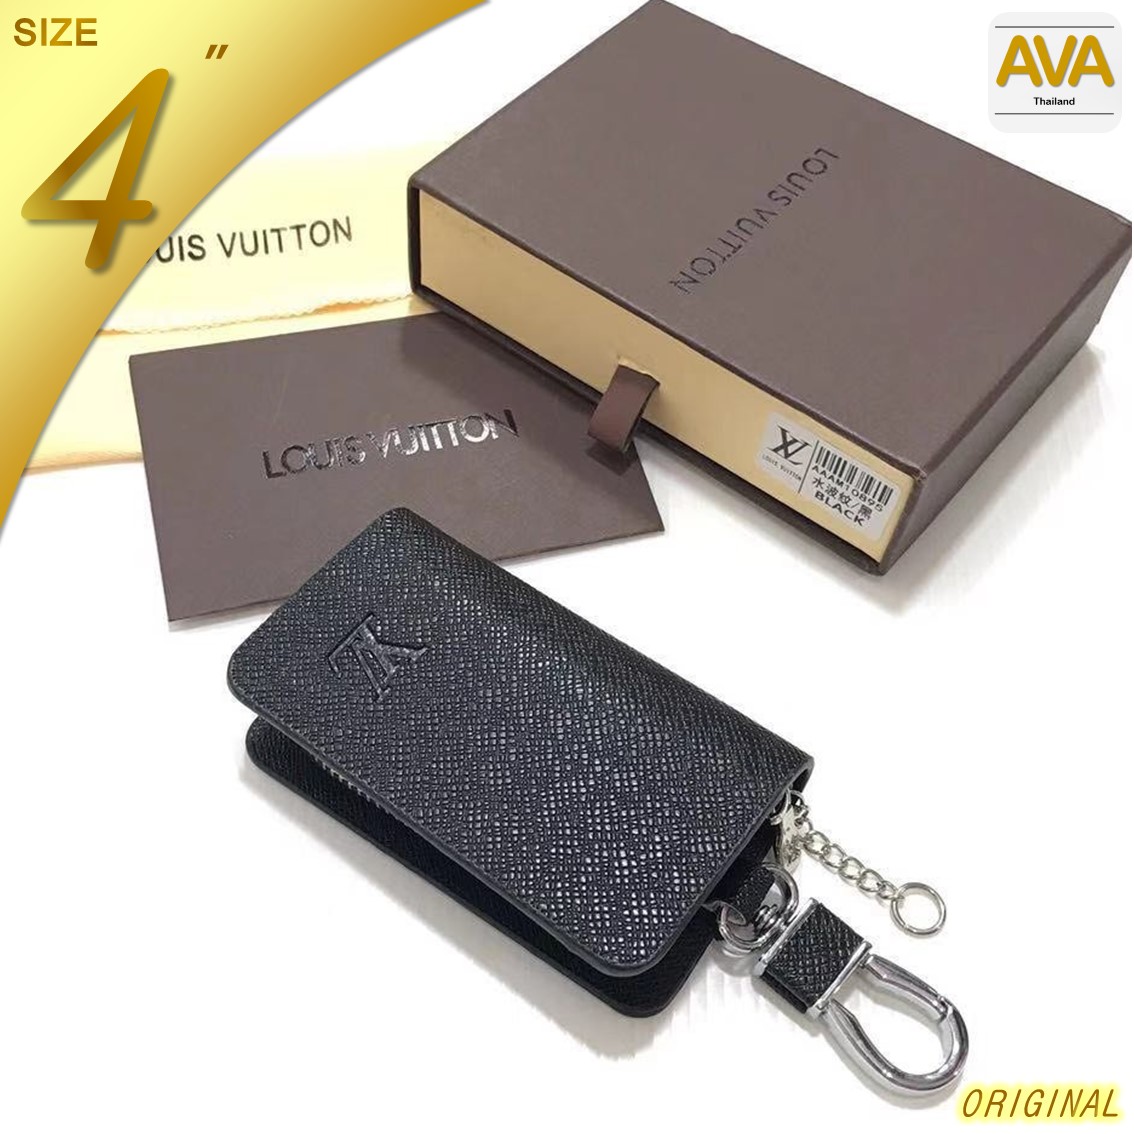 AVA Thailand - L o u i sV u i t t o n_KeyHolder กระเป๋ากุญแจ ขนาด 4 นิ้ว สำหรับใส่กุญแจ และ กุญแจ Keyless เป็นหนัง PU พร้อมกล่องสวยงาม